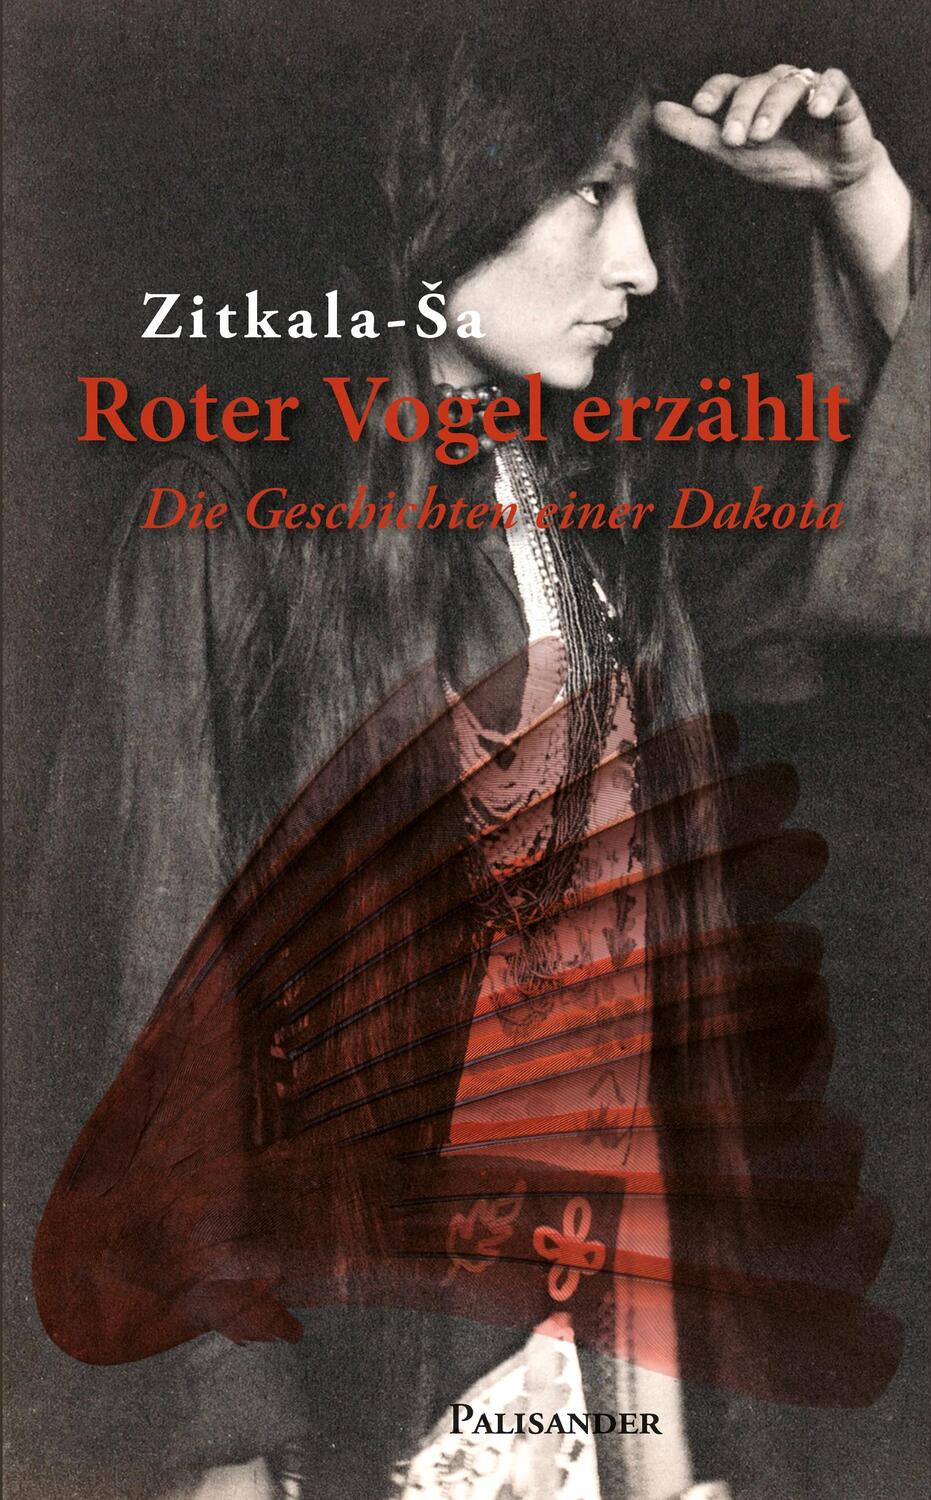 Roter Vogel erzählt - Zitkala-Sa